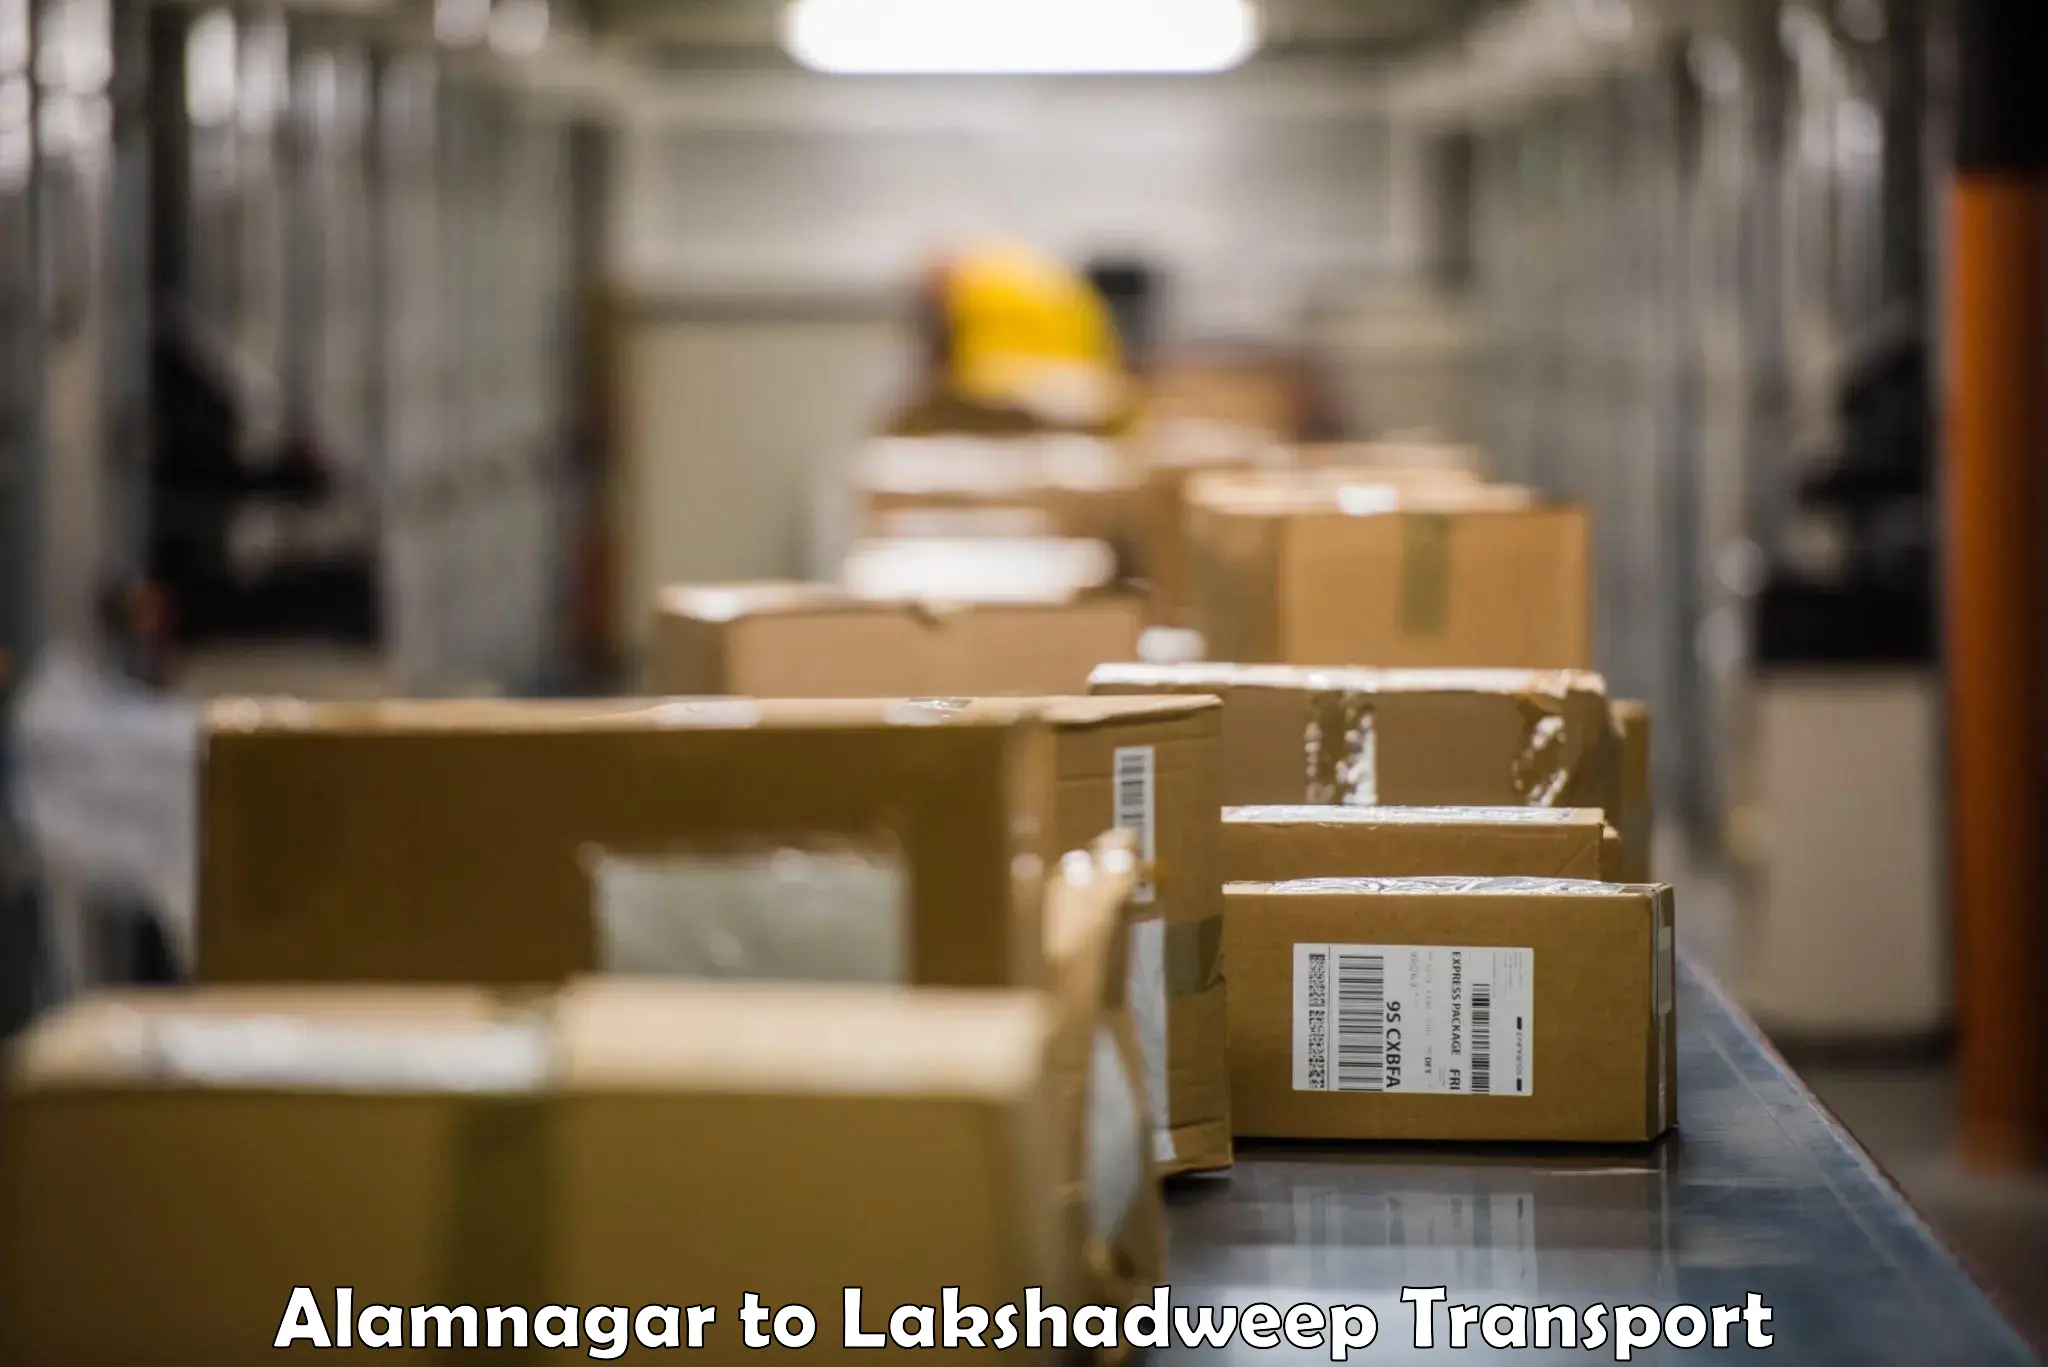 Furniture transport service Alamnagar to Lakshadweep